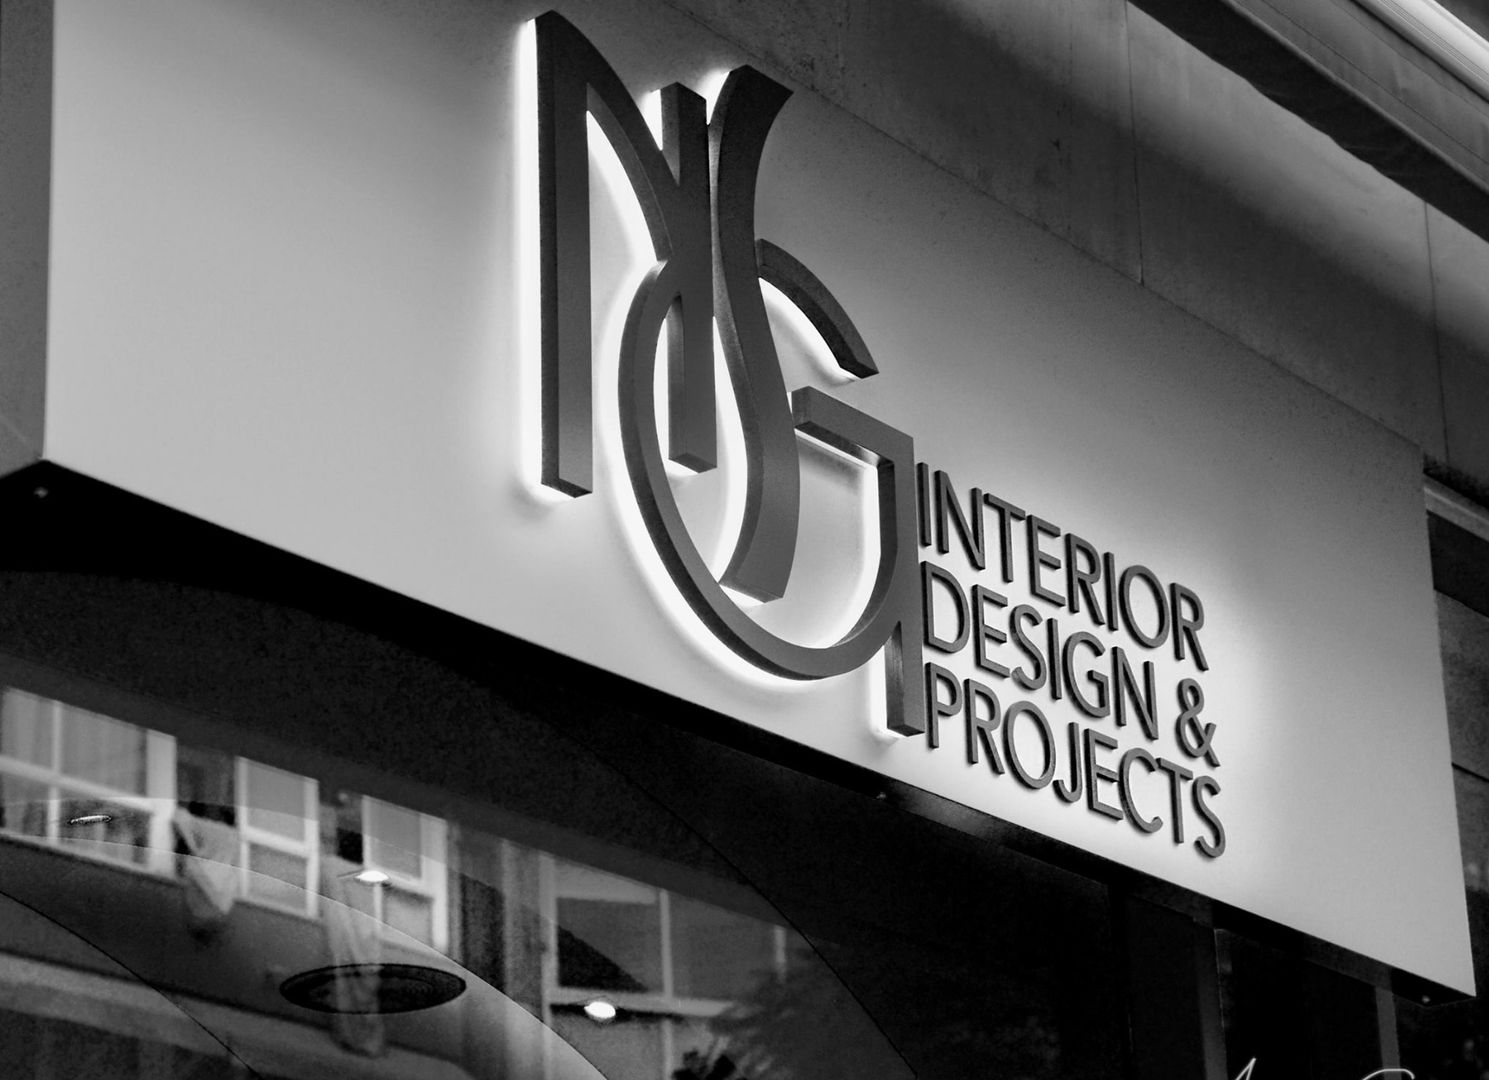 NSG Office , NSG interior Design & Projects, reformas y decoración en Mallorca NSG interior Design & Projects, reformas y decoración en Mallorca مساحات تجارية مكاتب ومحلات